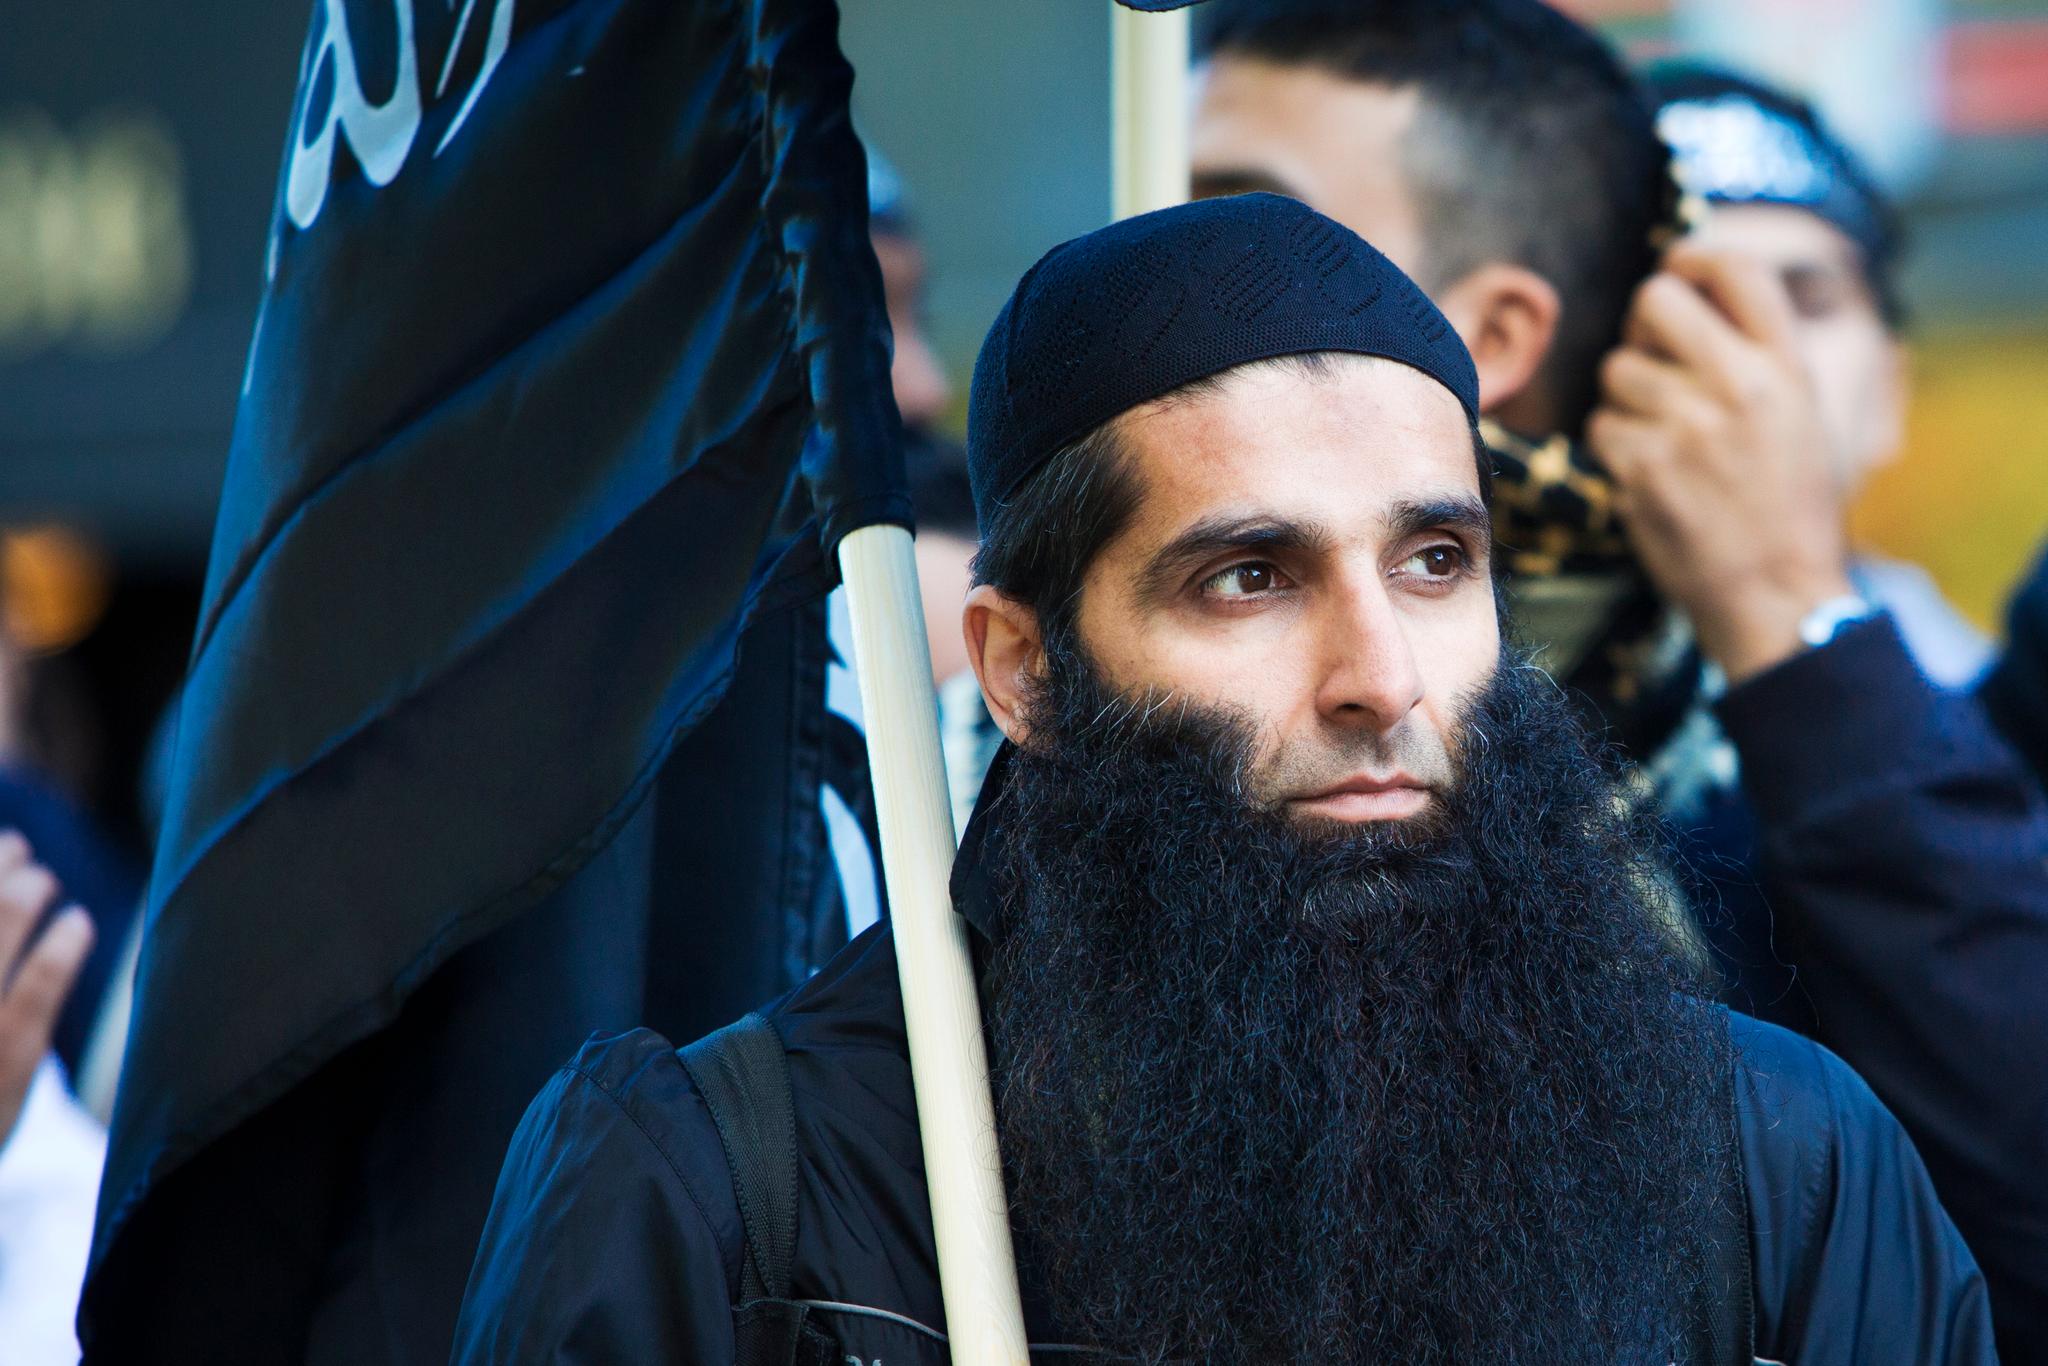 Мусульманских волосатые. Борода мусульманина. Мусульмане с длинными волосами. Борода в Исламе. Настоящие мусульмане.